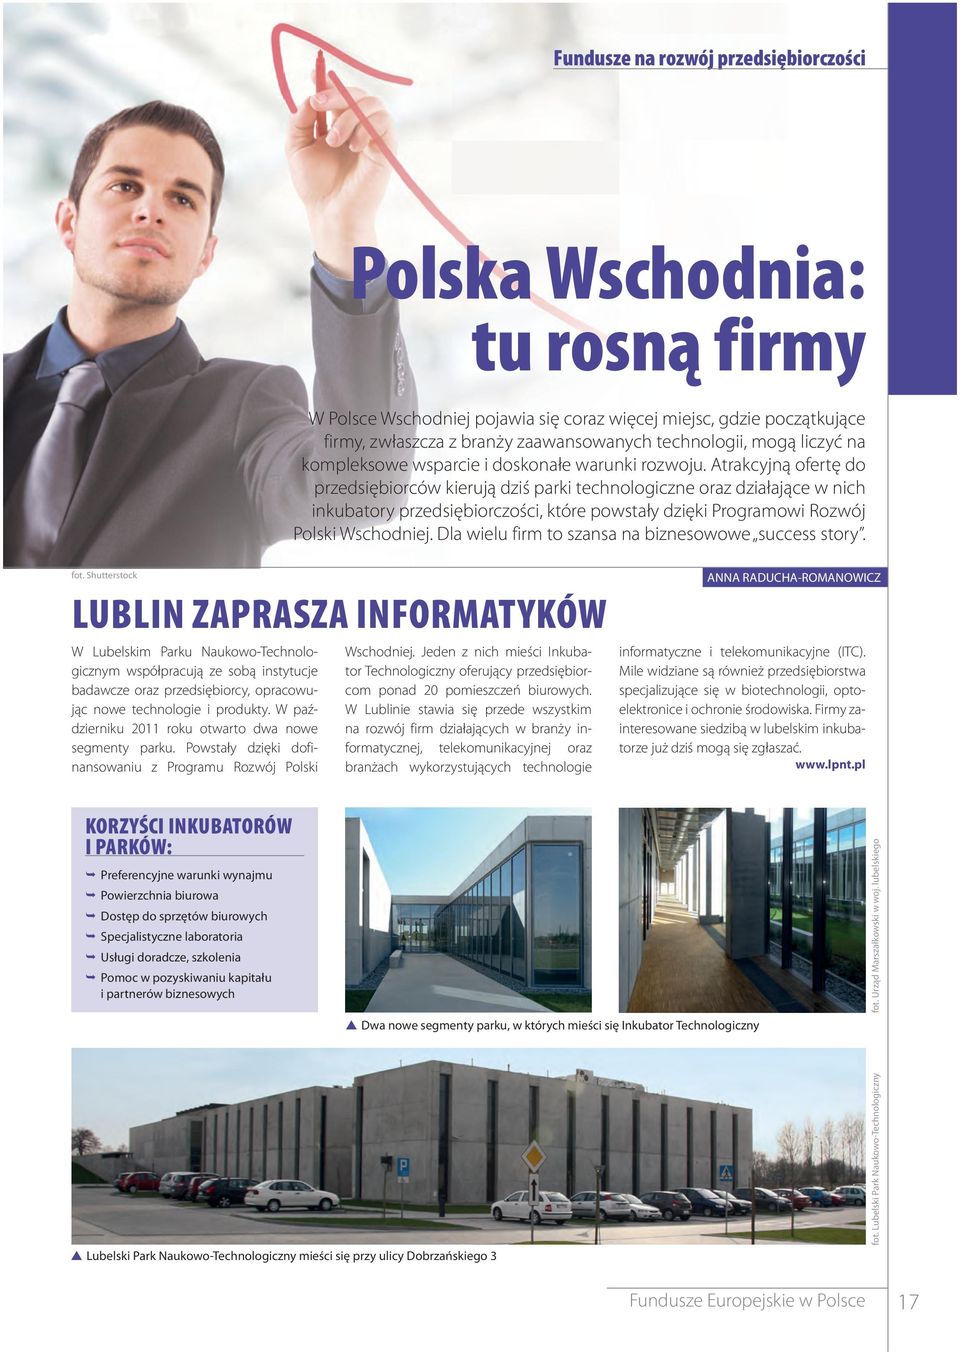 Atrakcyjną ofertę do przedsiębiorców kierują dziś parki technologiczne oraz działające w nich inkubatory przedsiębiorczości, które powstały dzięki Programowi Rozwój Polski Wschodniej.